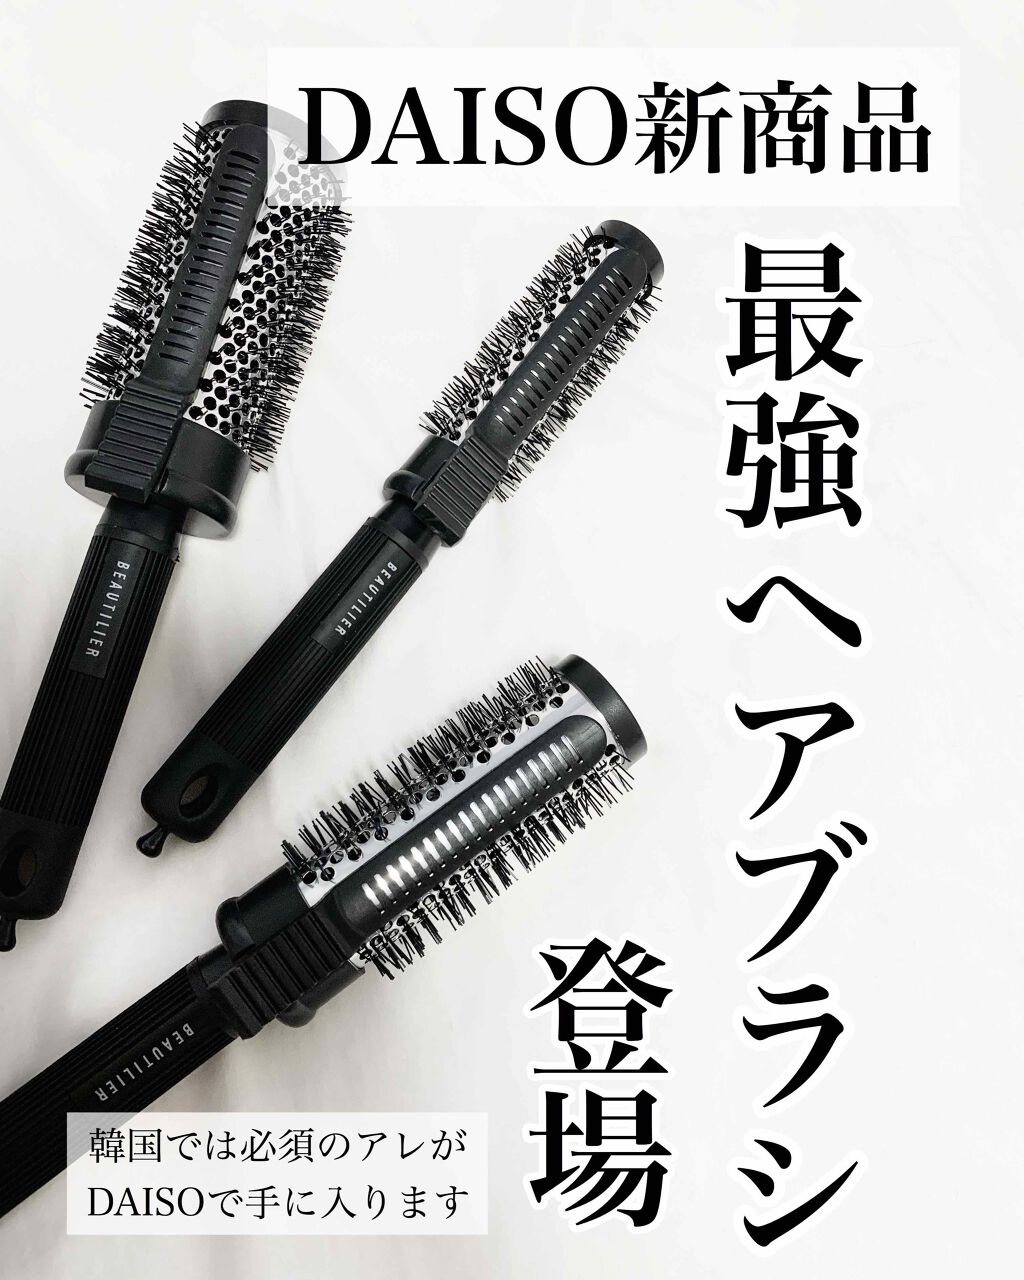 クリップ熱伝導ヘアブラシ Daisoの使い方を徹底解説 超優秀 100均で買えるおすすめスタイリング 韓国でバズったアイテ By 𝒜𝑘𝑎𝑟𝑖 敏感肌 代前半 Lips